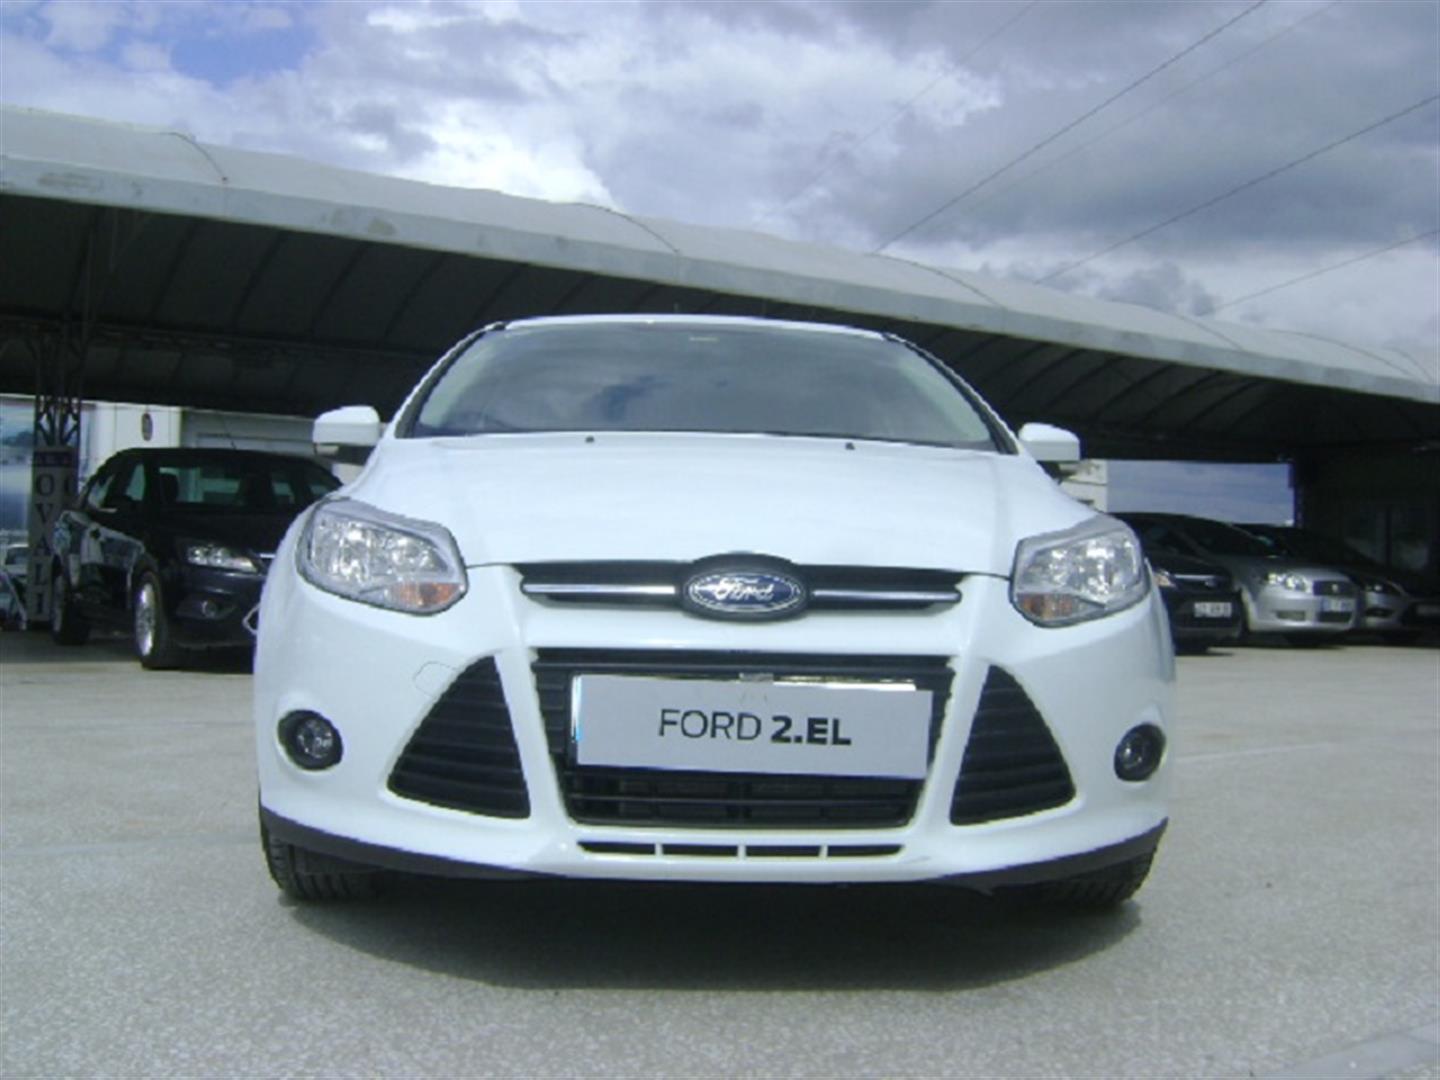 Ford Focus - Hatchback, Family Car | Ford UK